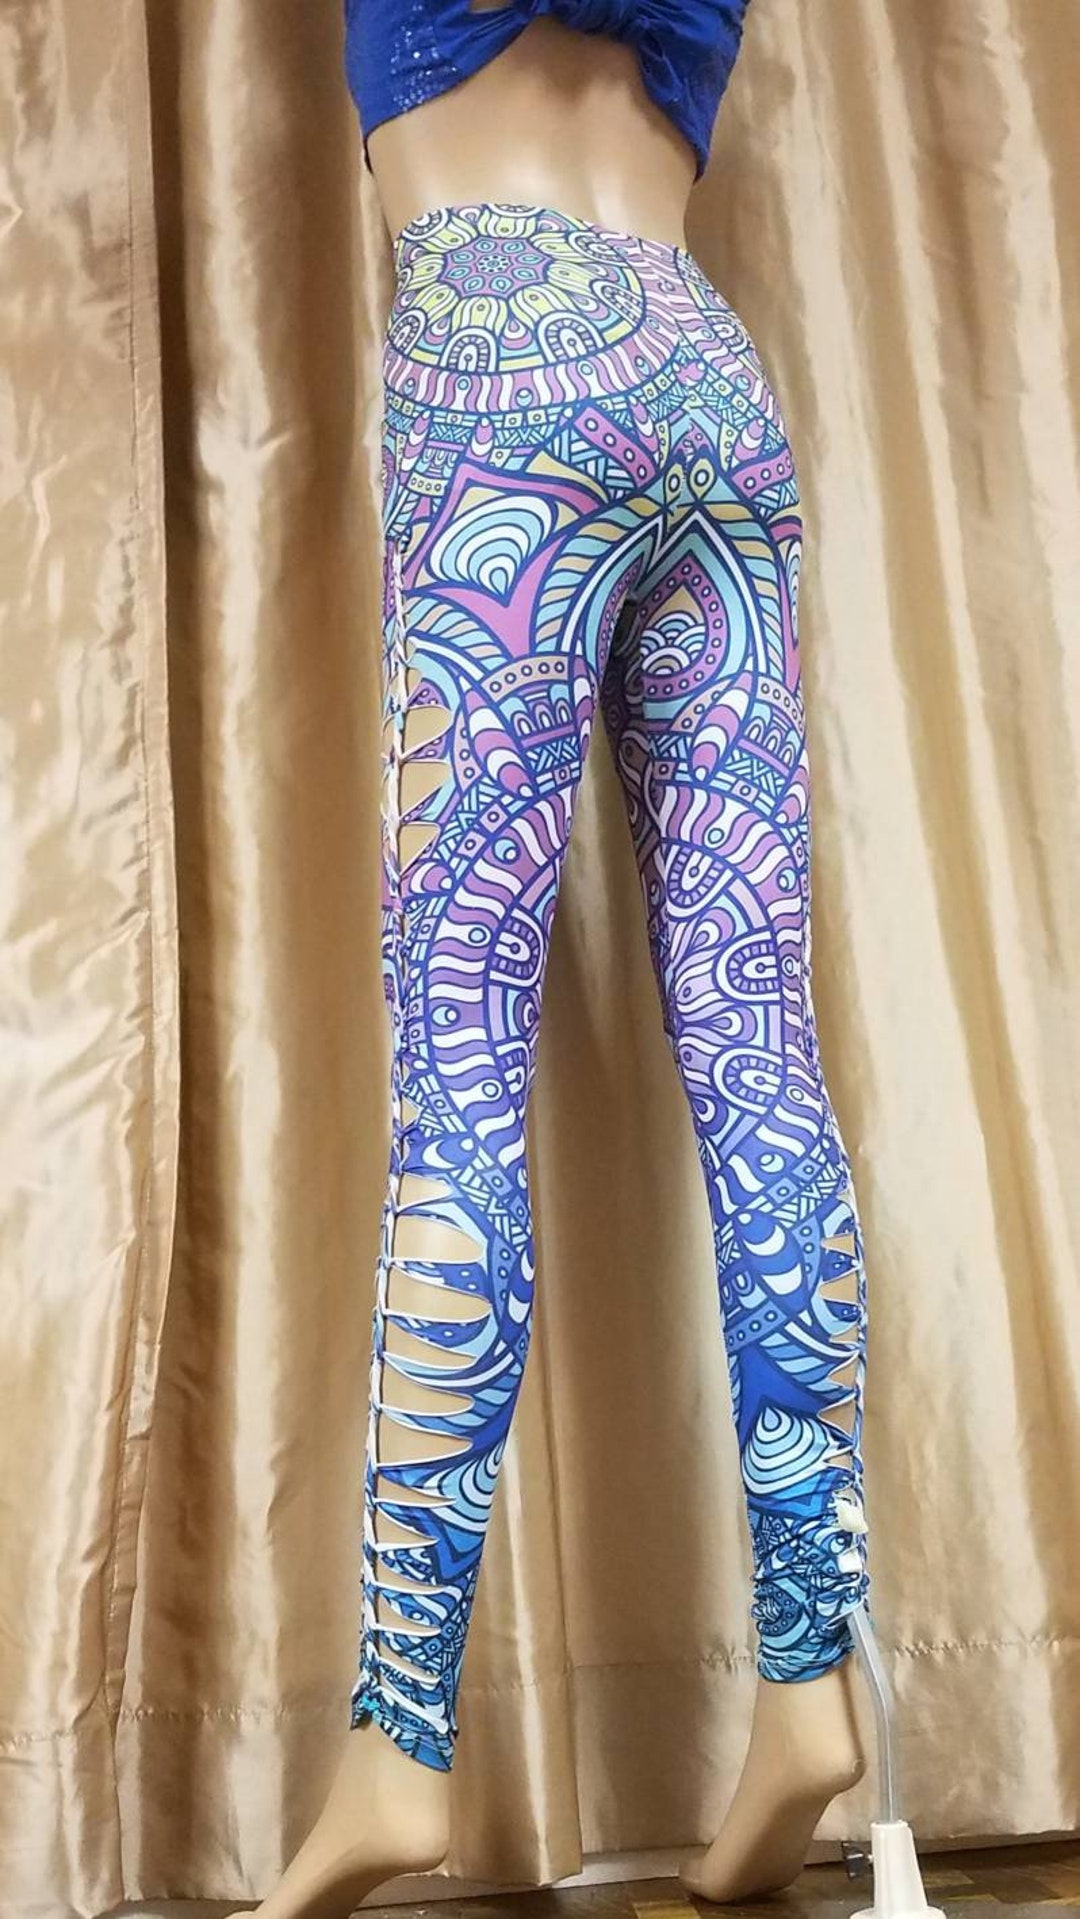 Better Butt Lift Braided Leggings Colorful Purple Blue Mandala Print Boho  Dance Spring Summer 2020 Festival Hot Yoga Pants Psy Rave Hooper 